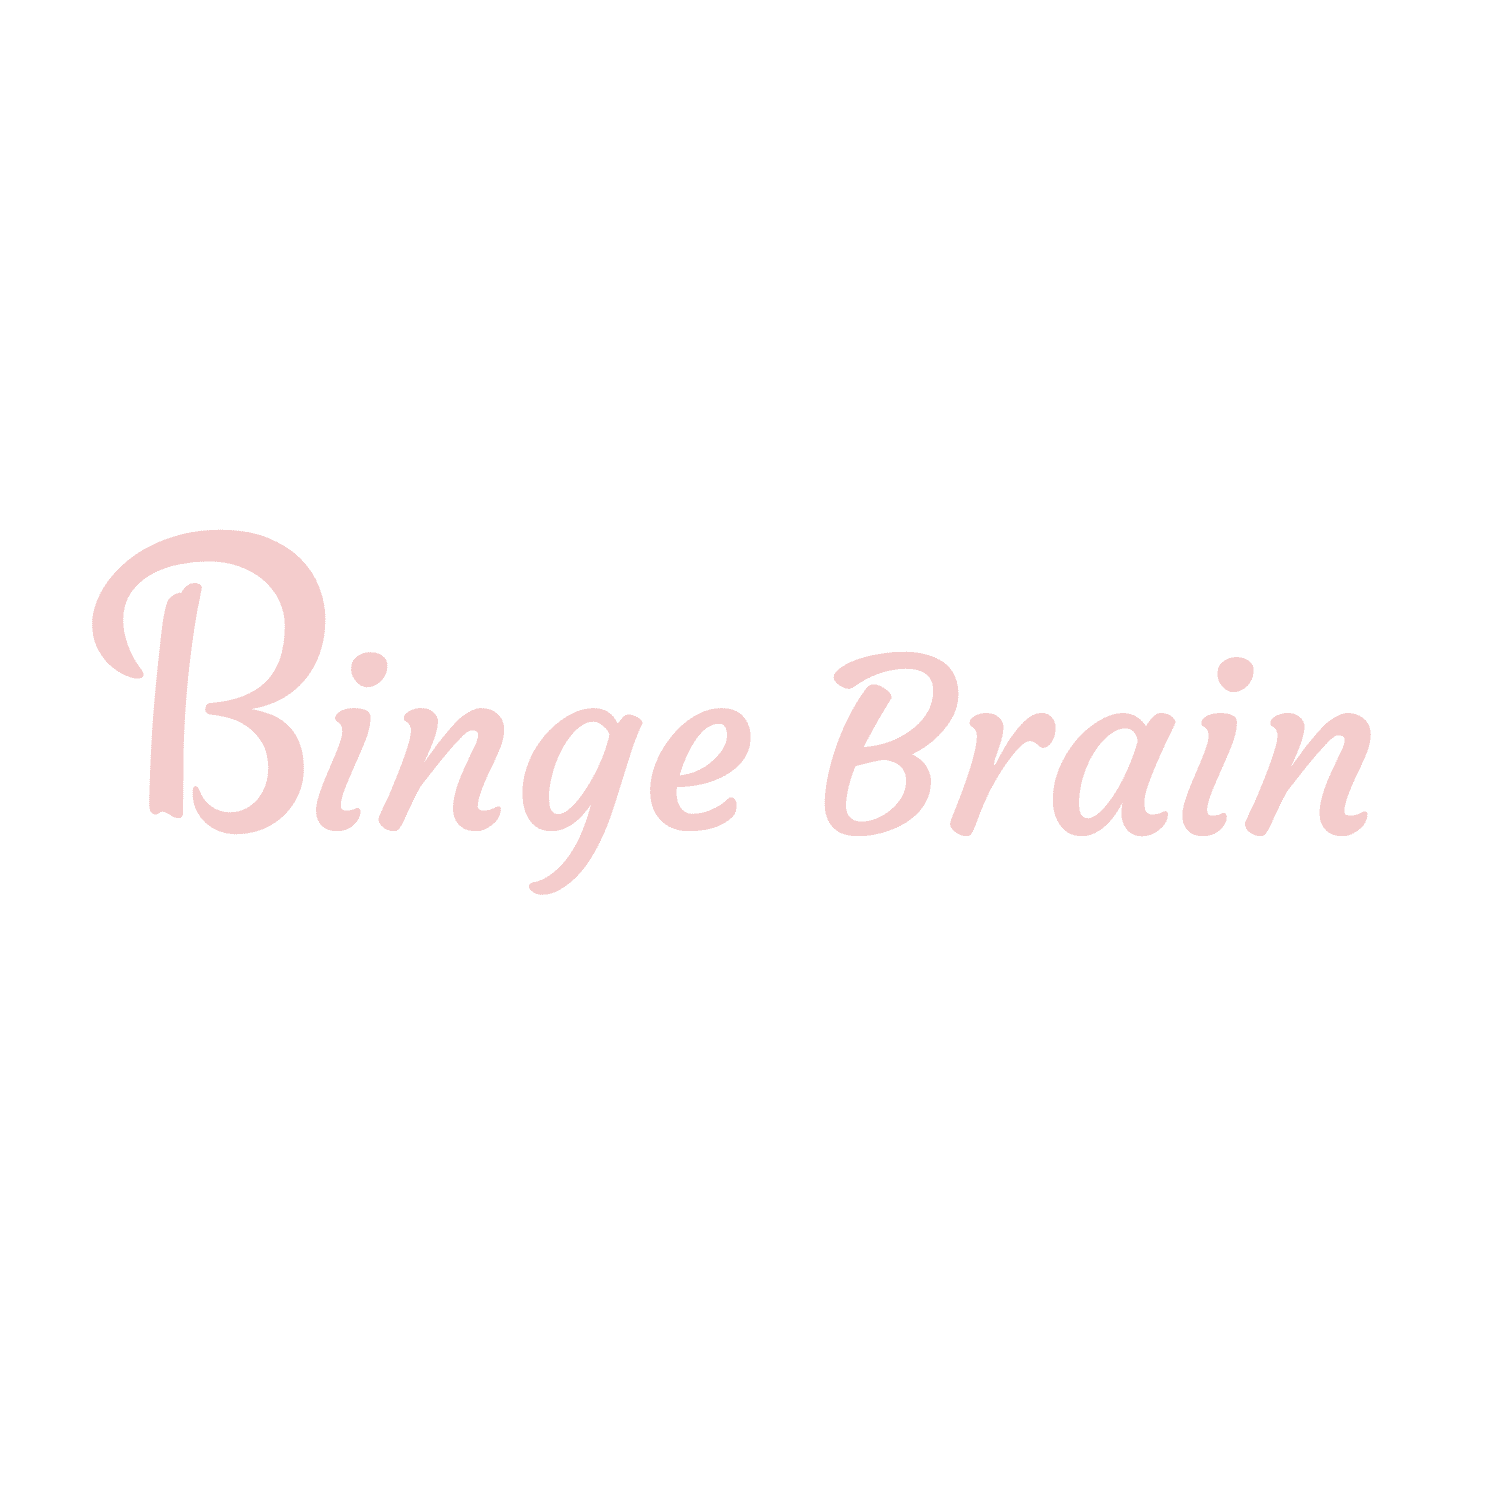 Binge Brain